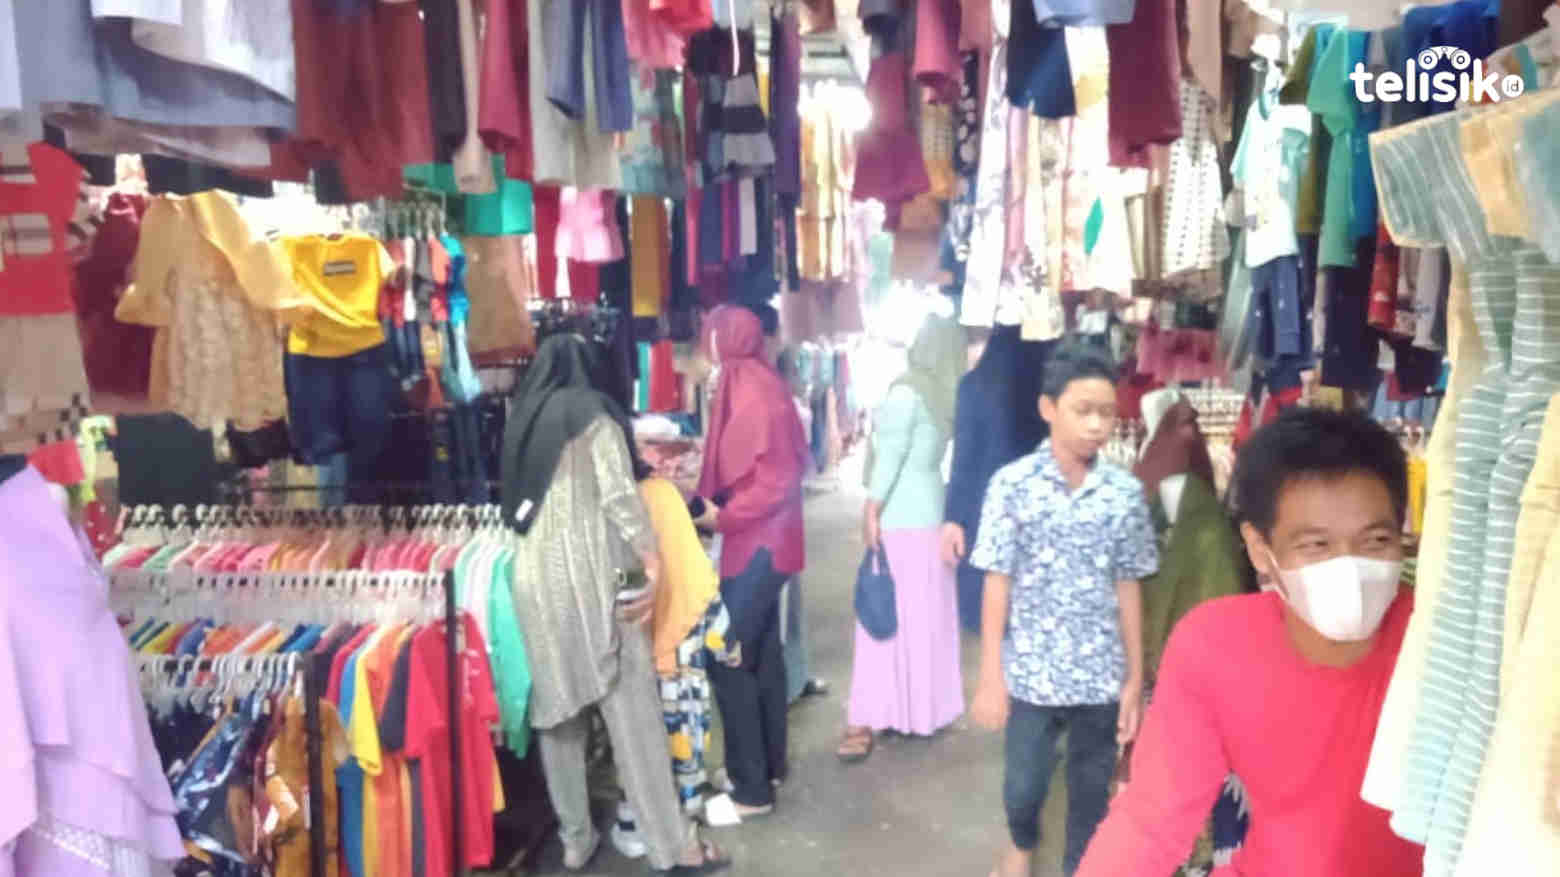 Jelang Lebaran, Pedagang Pakaian di Kolaka Utara Raup Untung Rp 5 Juta Per Hari